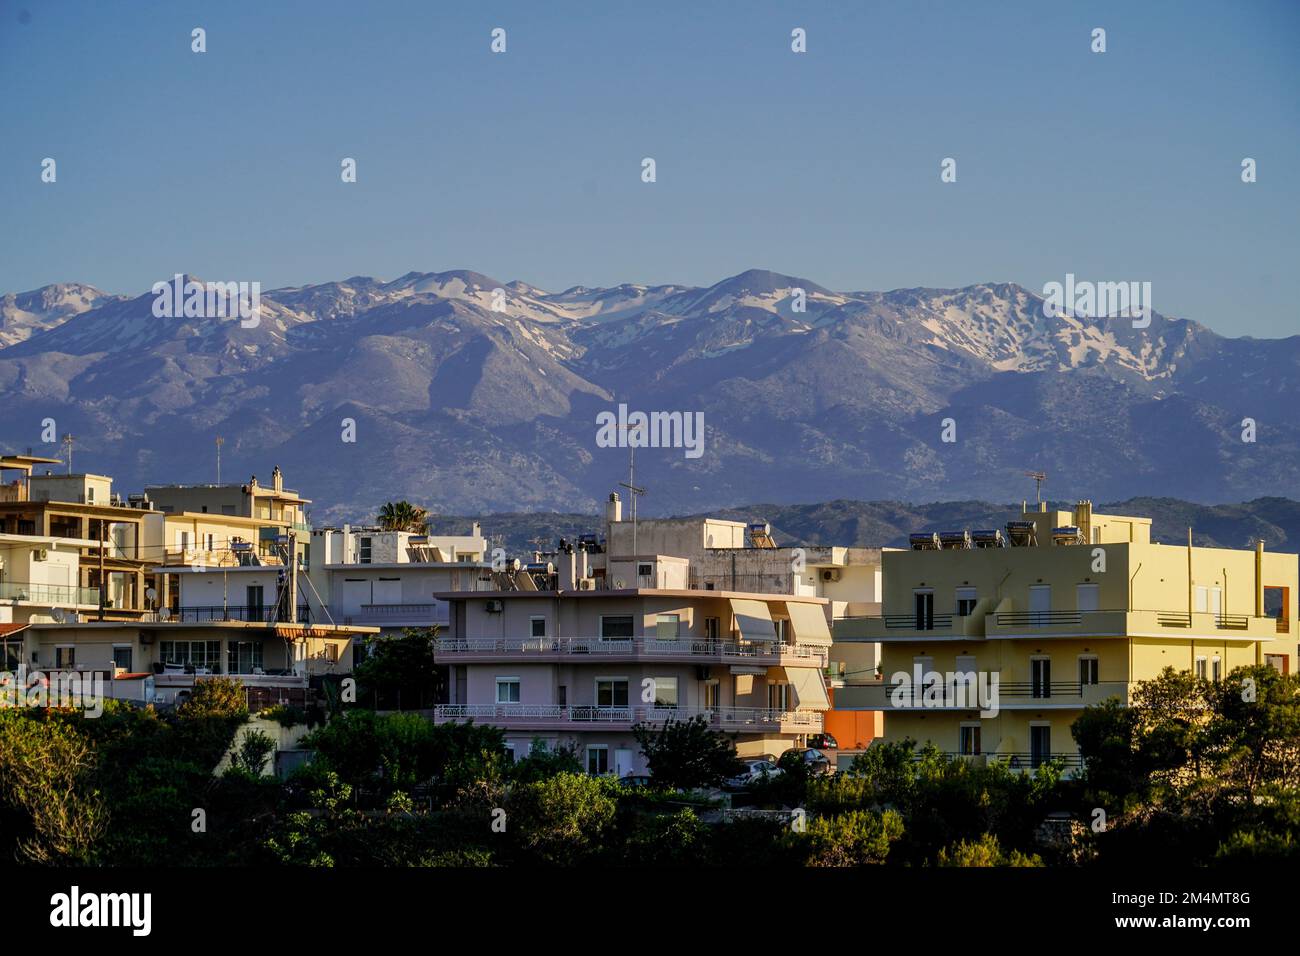 Cityscape of Chania, Crete, Greece Stock Photo